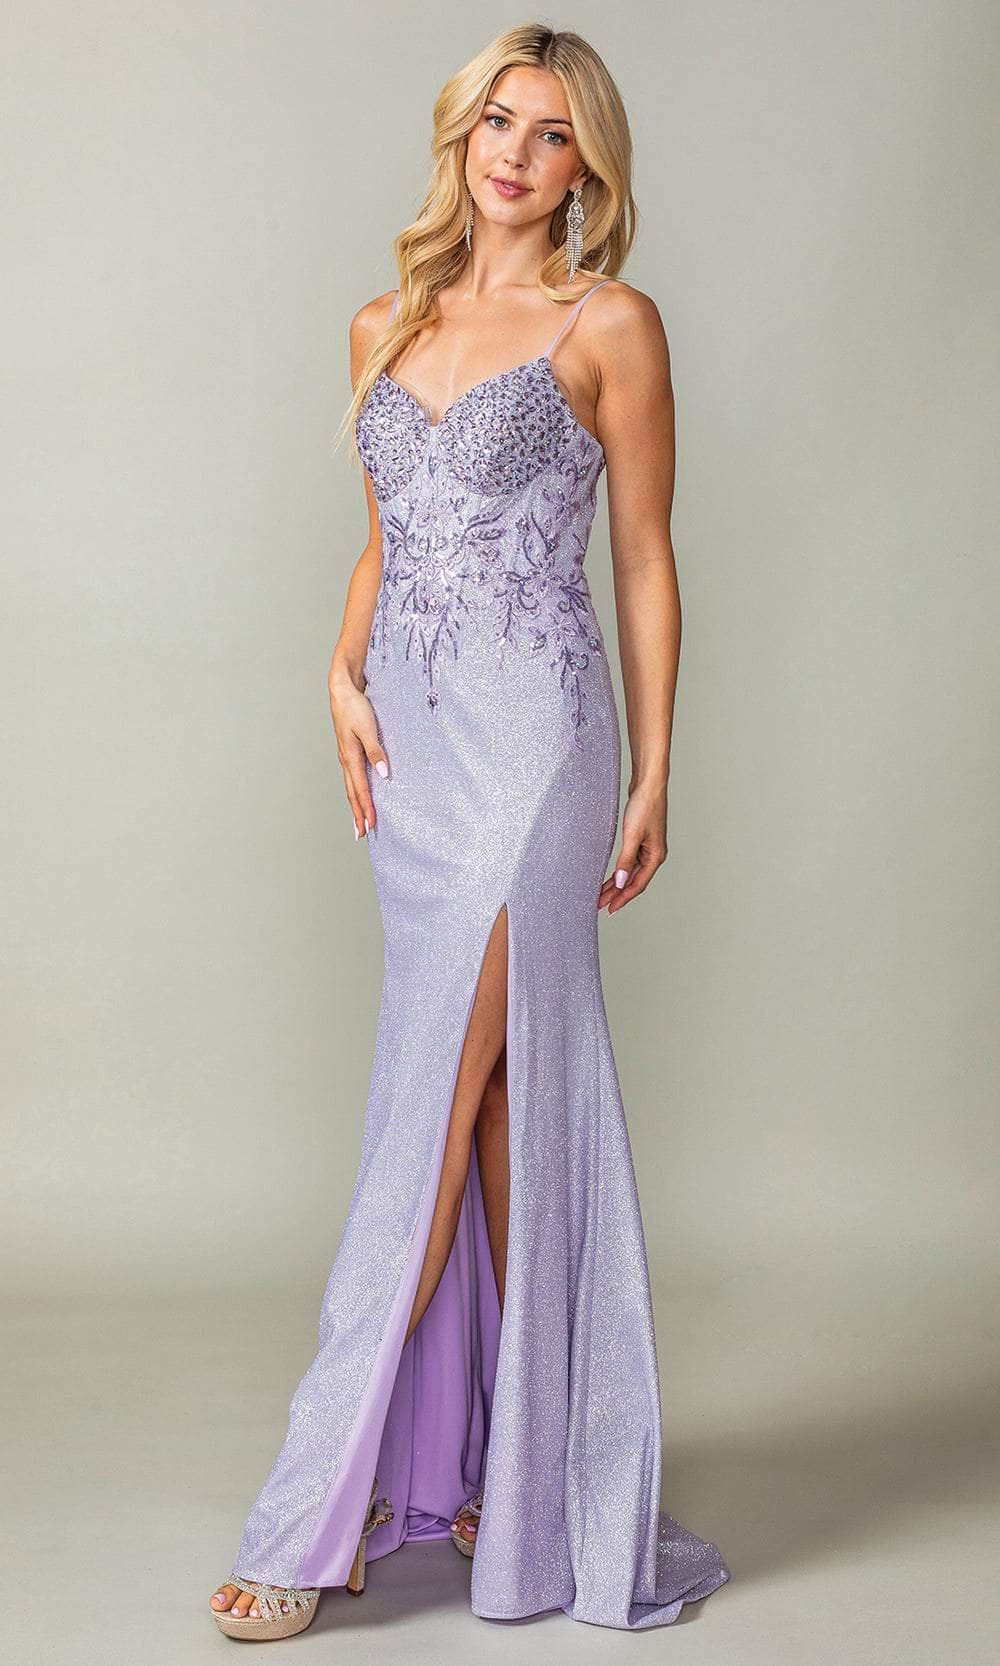 Dancing Queen 4375 - Embellished V-Neck Prom Dress Prom Dresses 